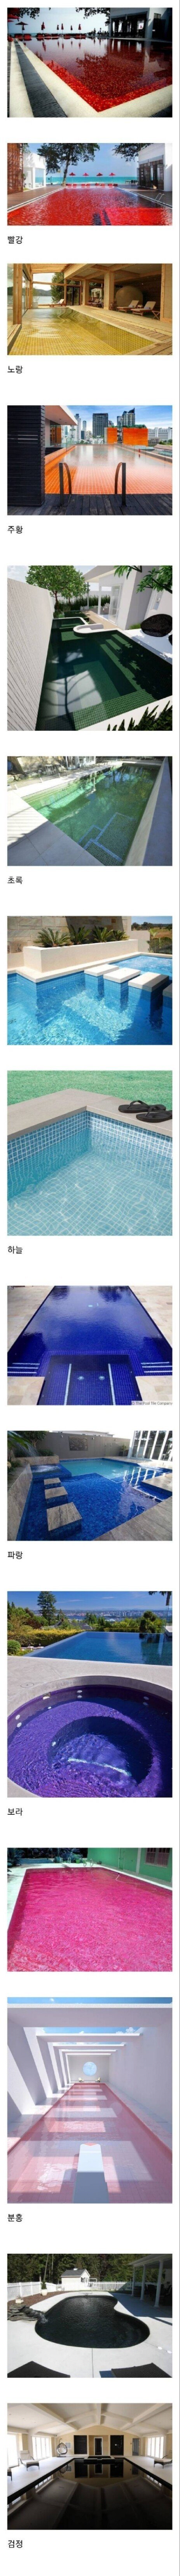 수영장 바닥이 대부분 파란색 계열인 이유